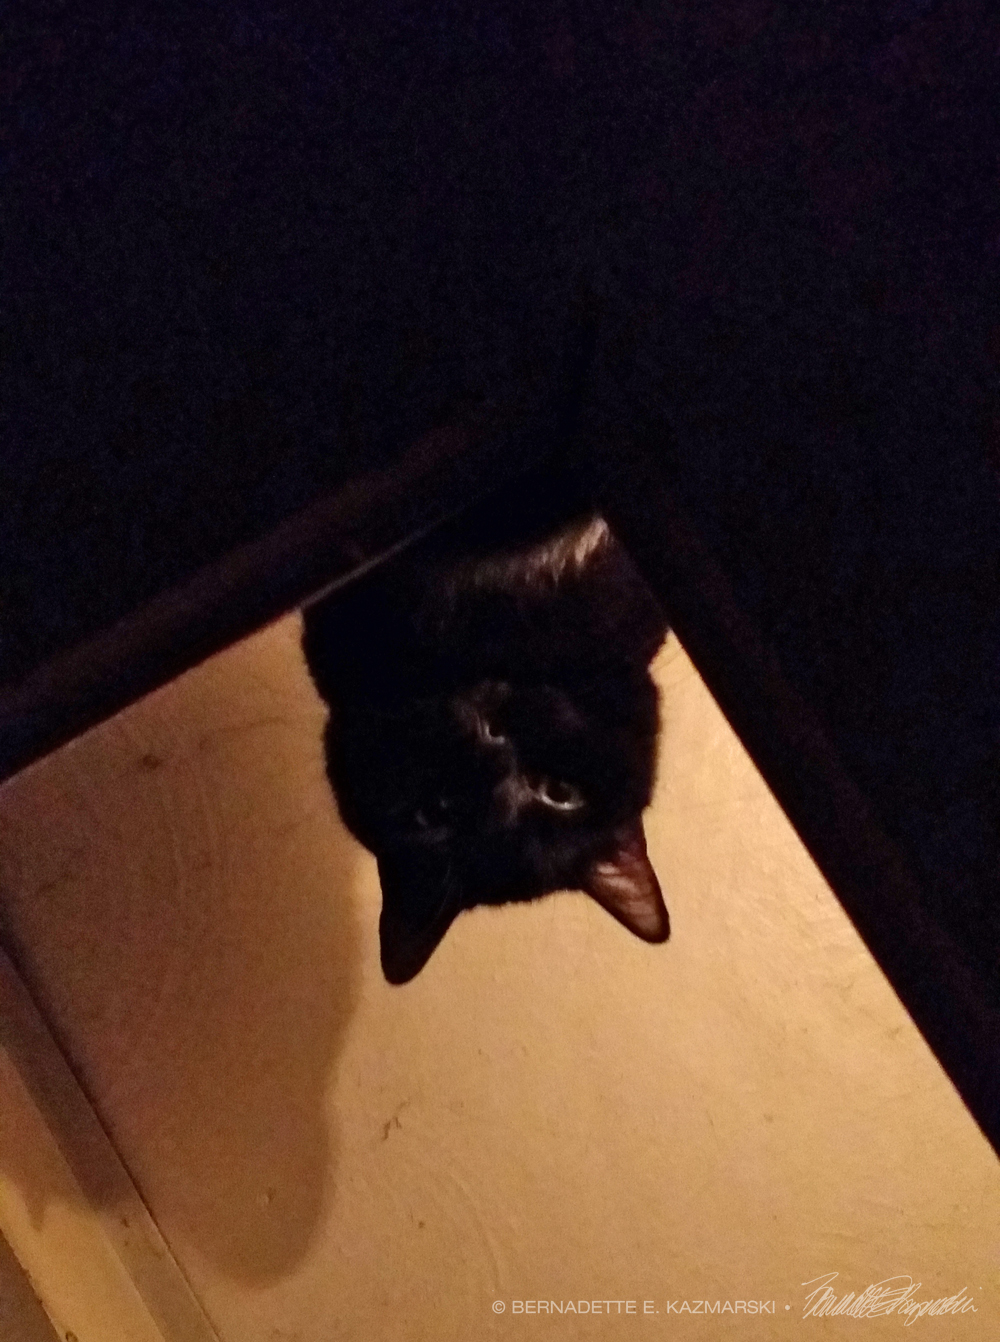 cat on shelf in silhouette